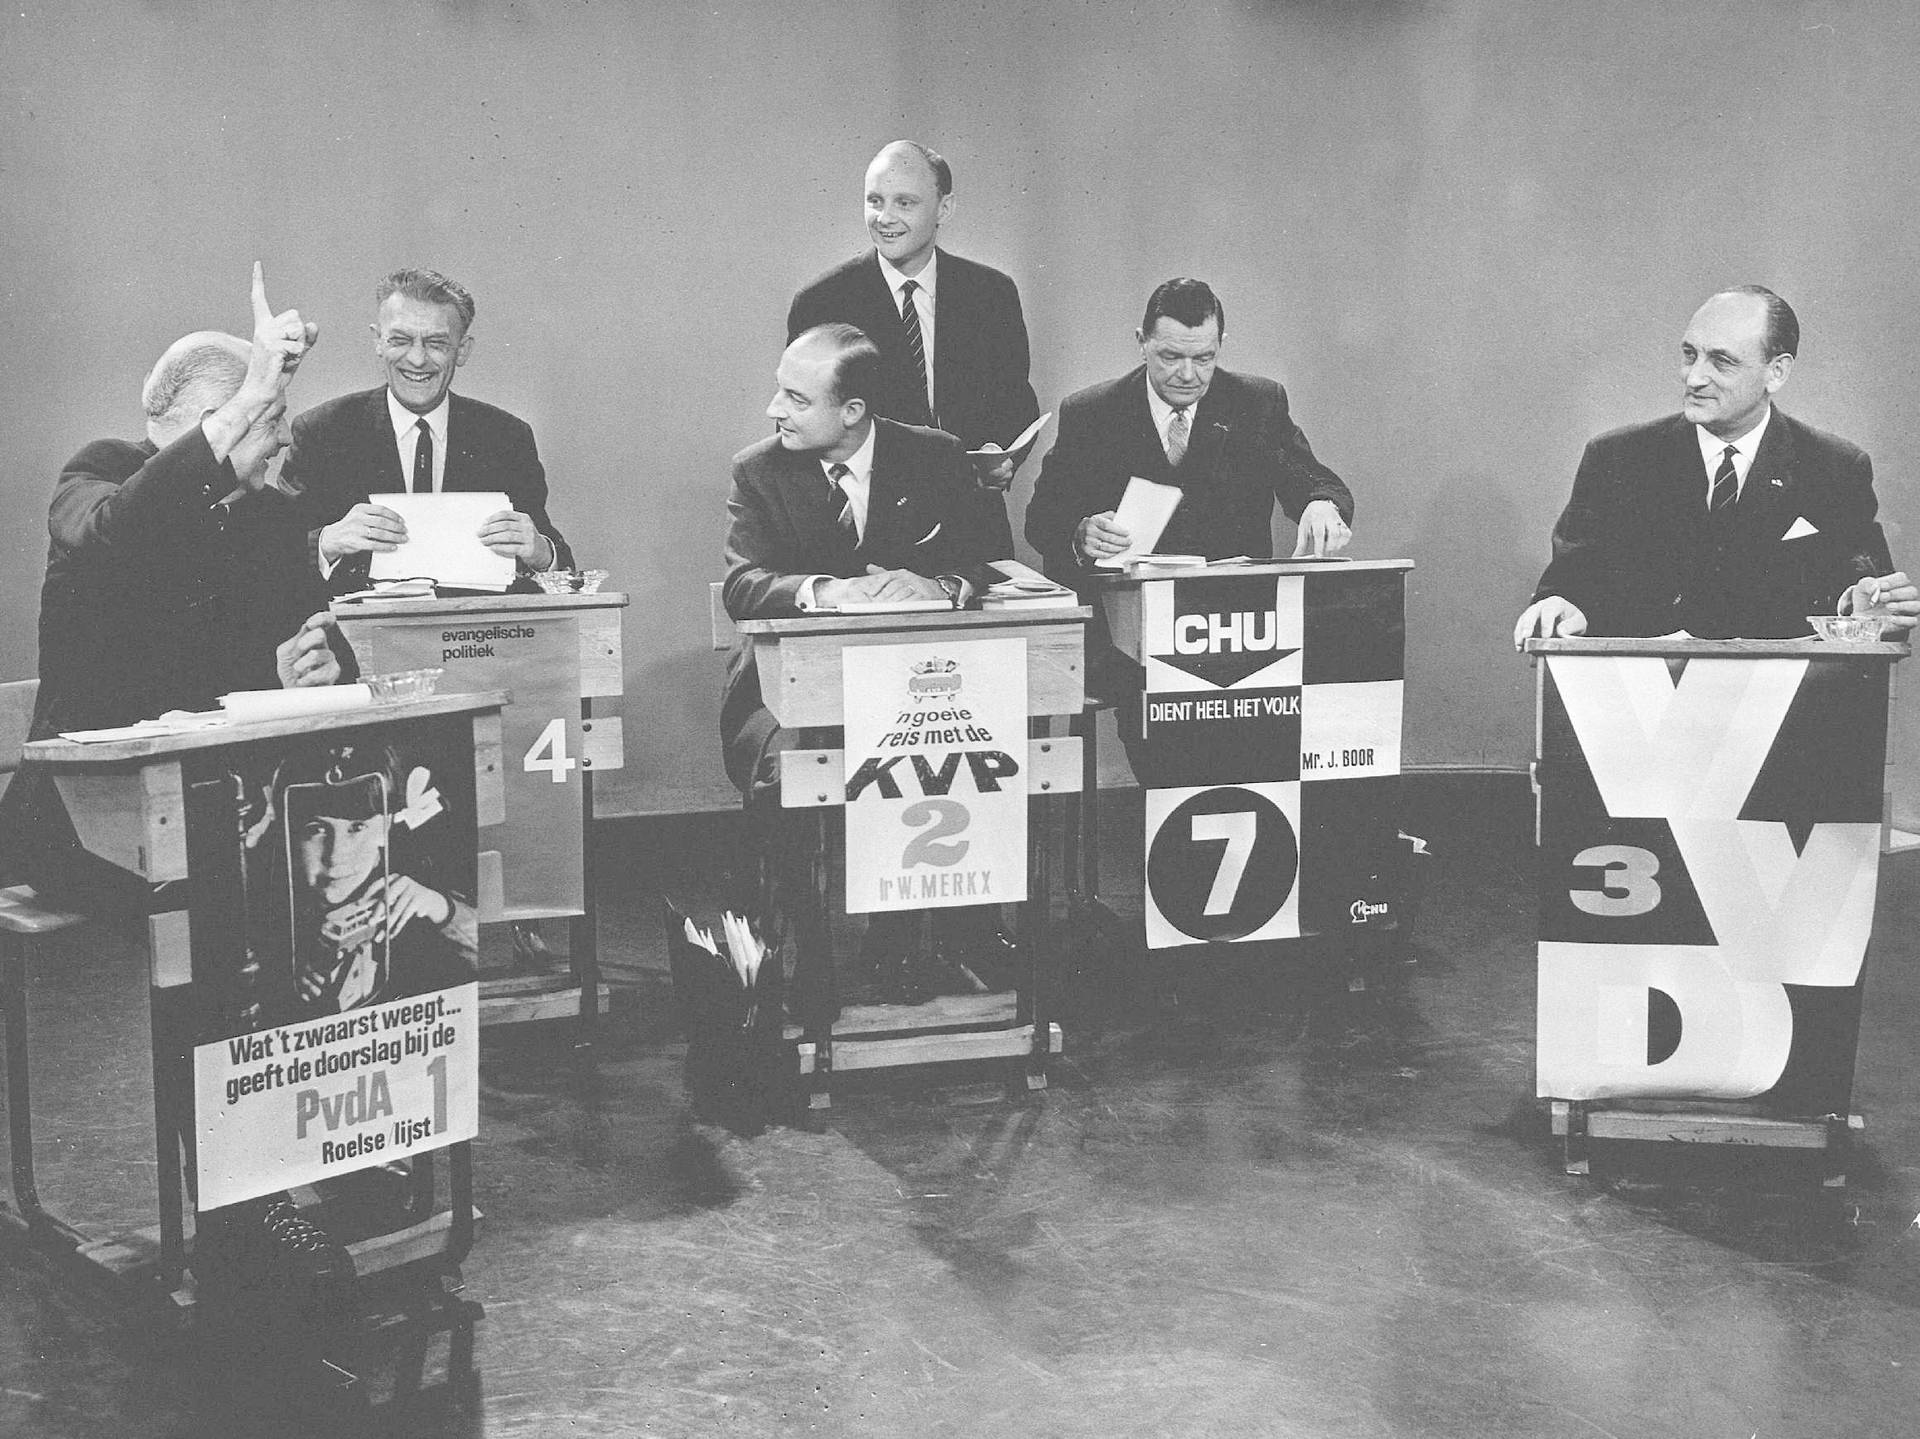 De fractieleiders van respectievelijk de PvdA, ARP, KVP, CHU en VVD in de televisiestudio in verband met de komende verkiezingen. Ferry Hoogendijk is de discussieleider, 22 maart 1966. Foto: ANP.